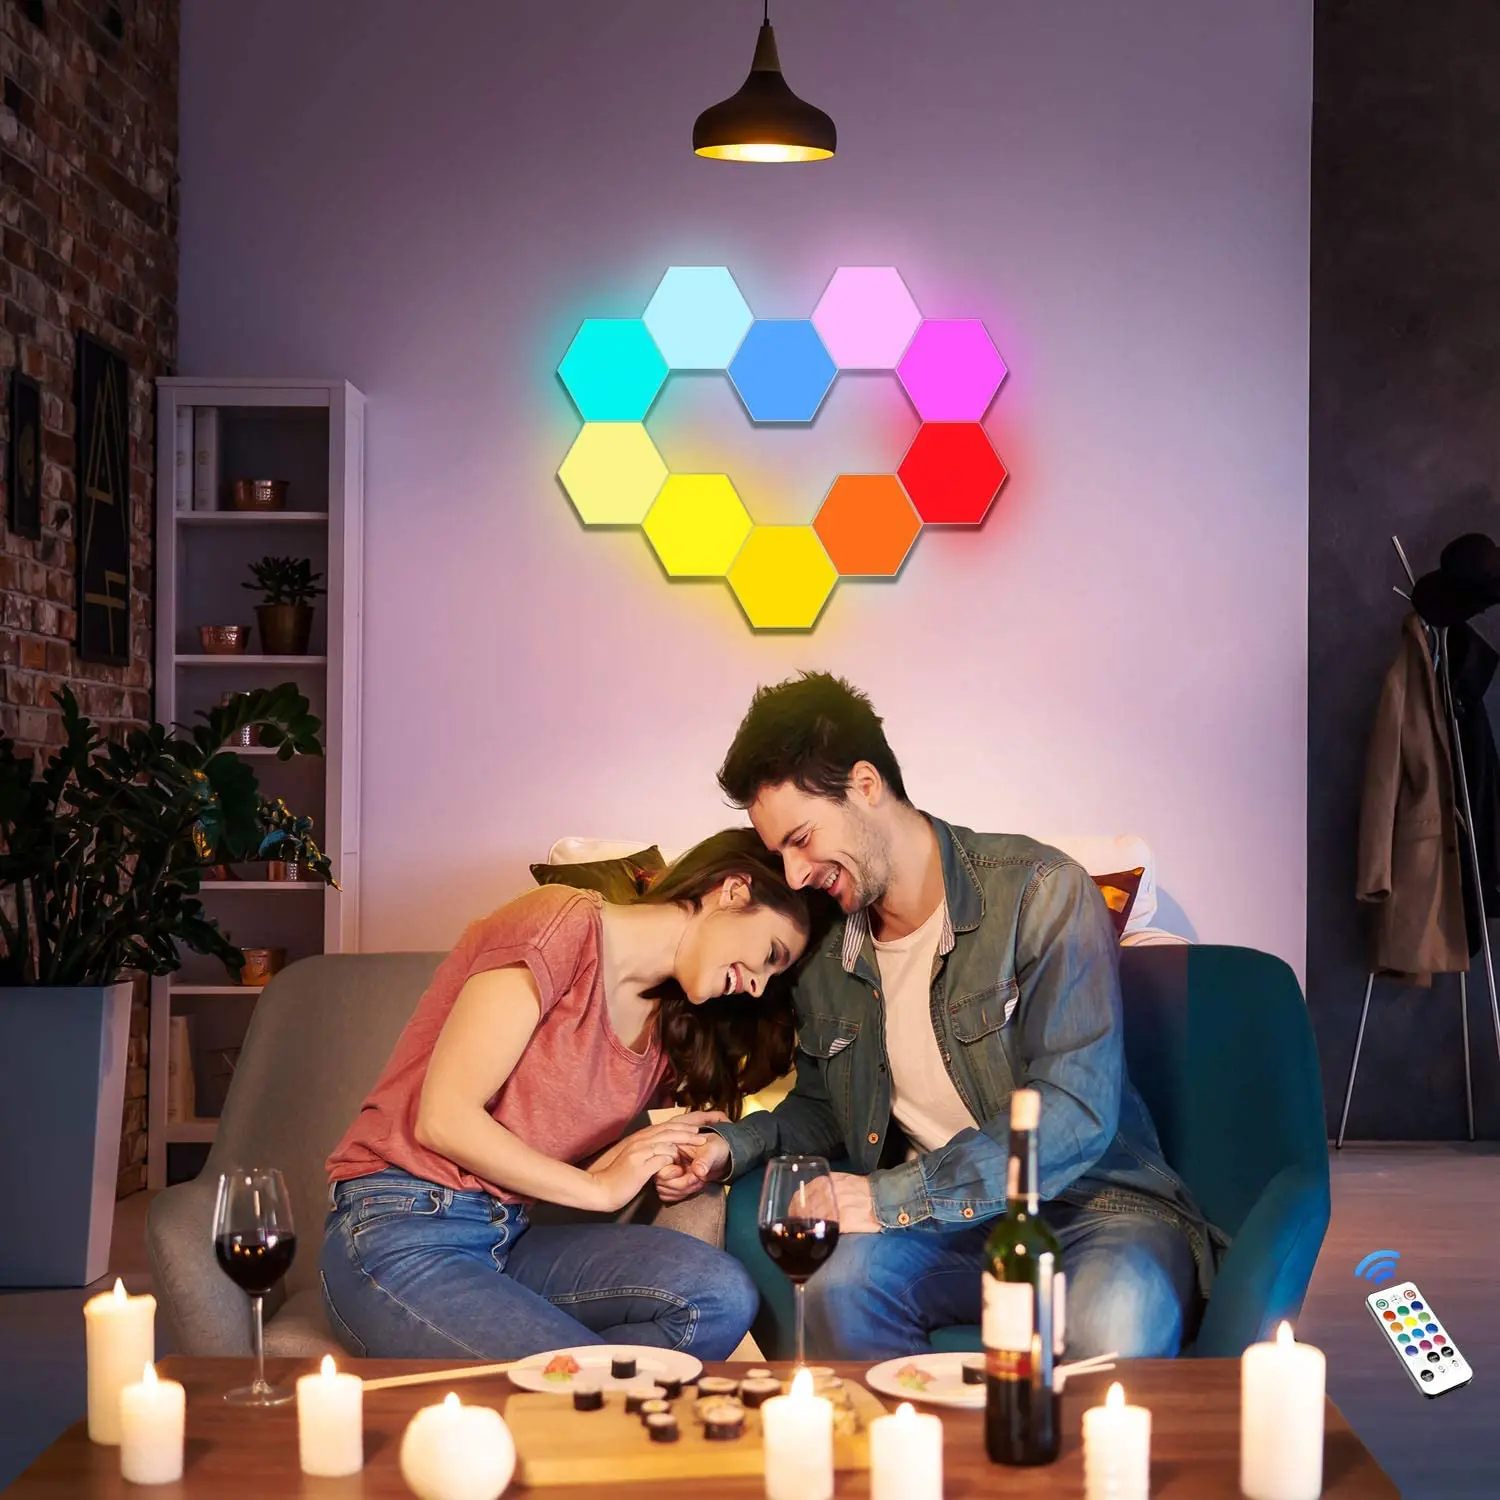 Сенсорный домашний декор «сделай сам», современный роскошный цветной светодиодный сотовый декор, квантовая Шестигранная настенная лампа от AliExpress RU&CIS NEW